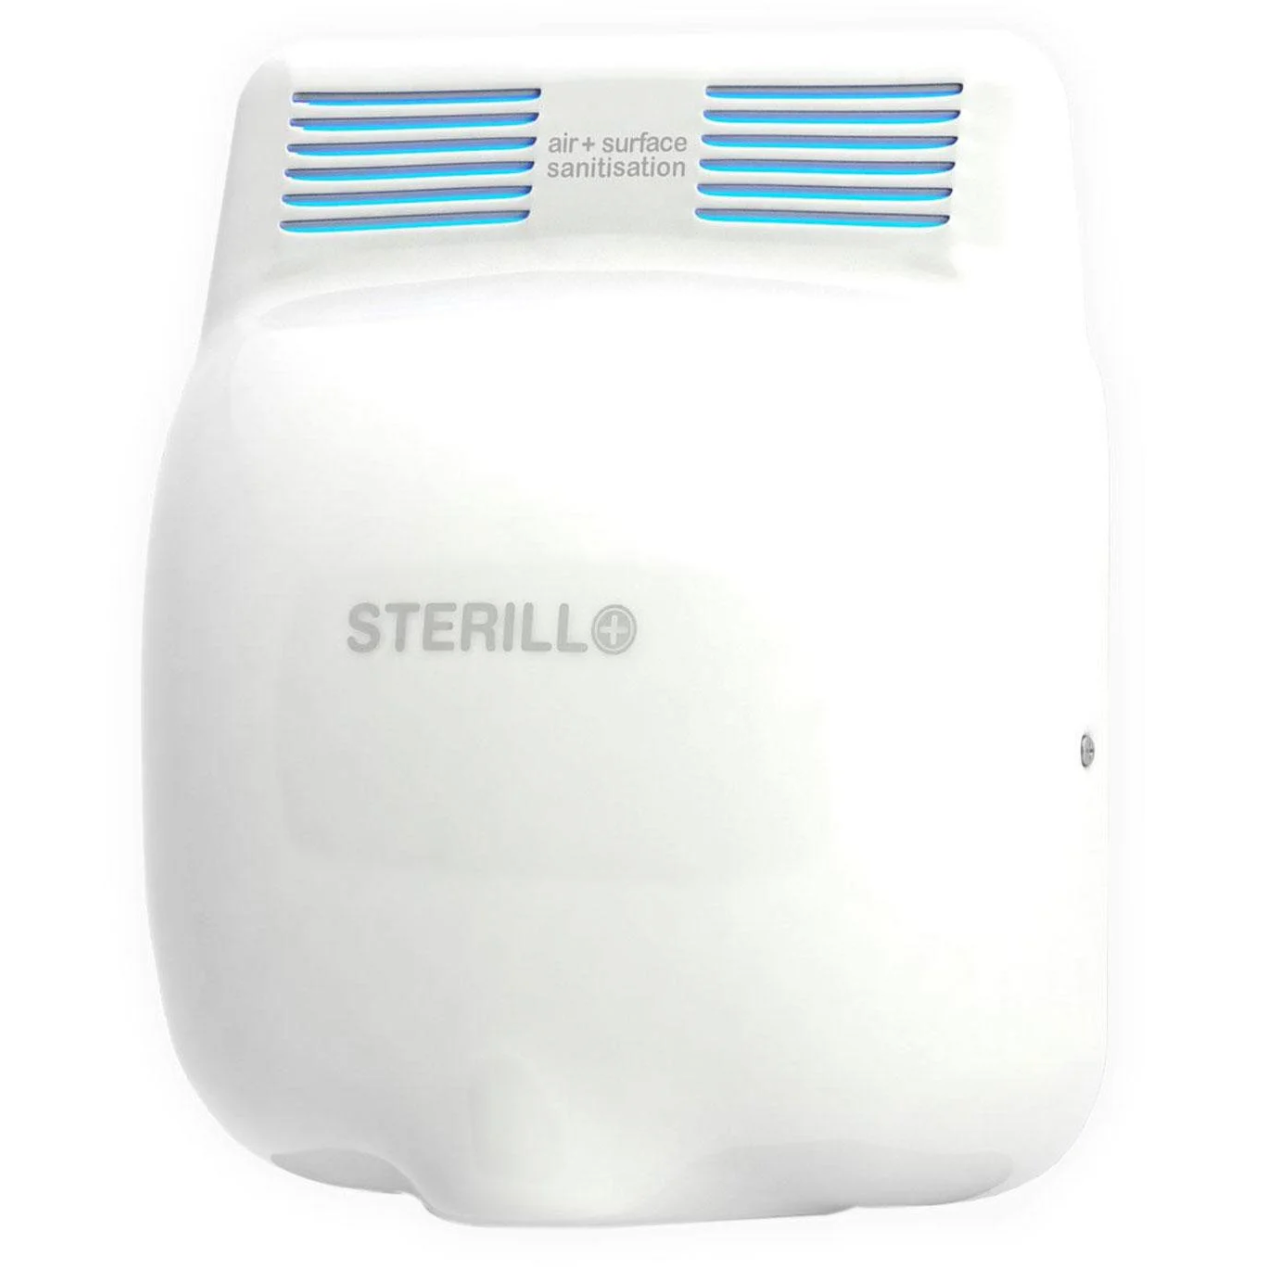 Sterillo - Odour Control, Sterilising Hand Dryer -White - 2208W